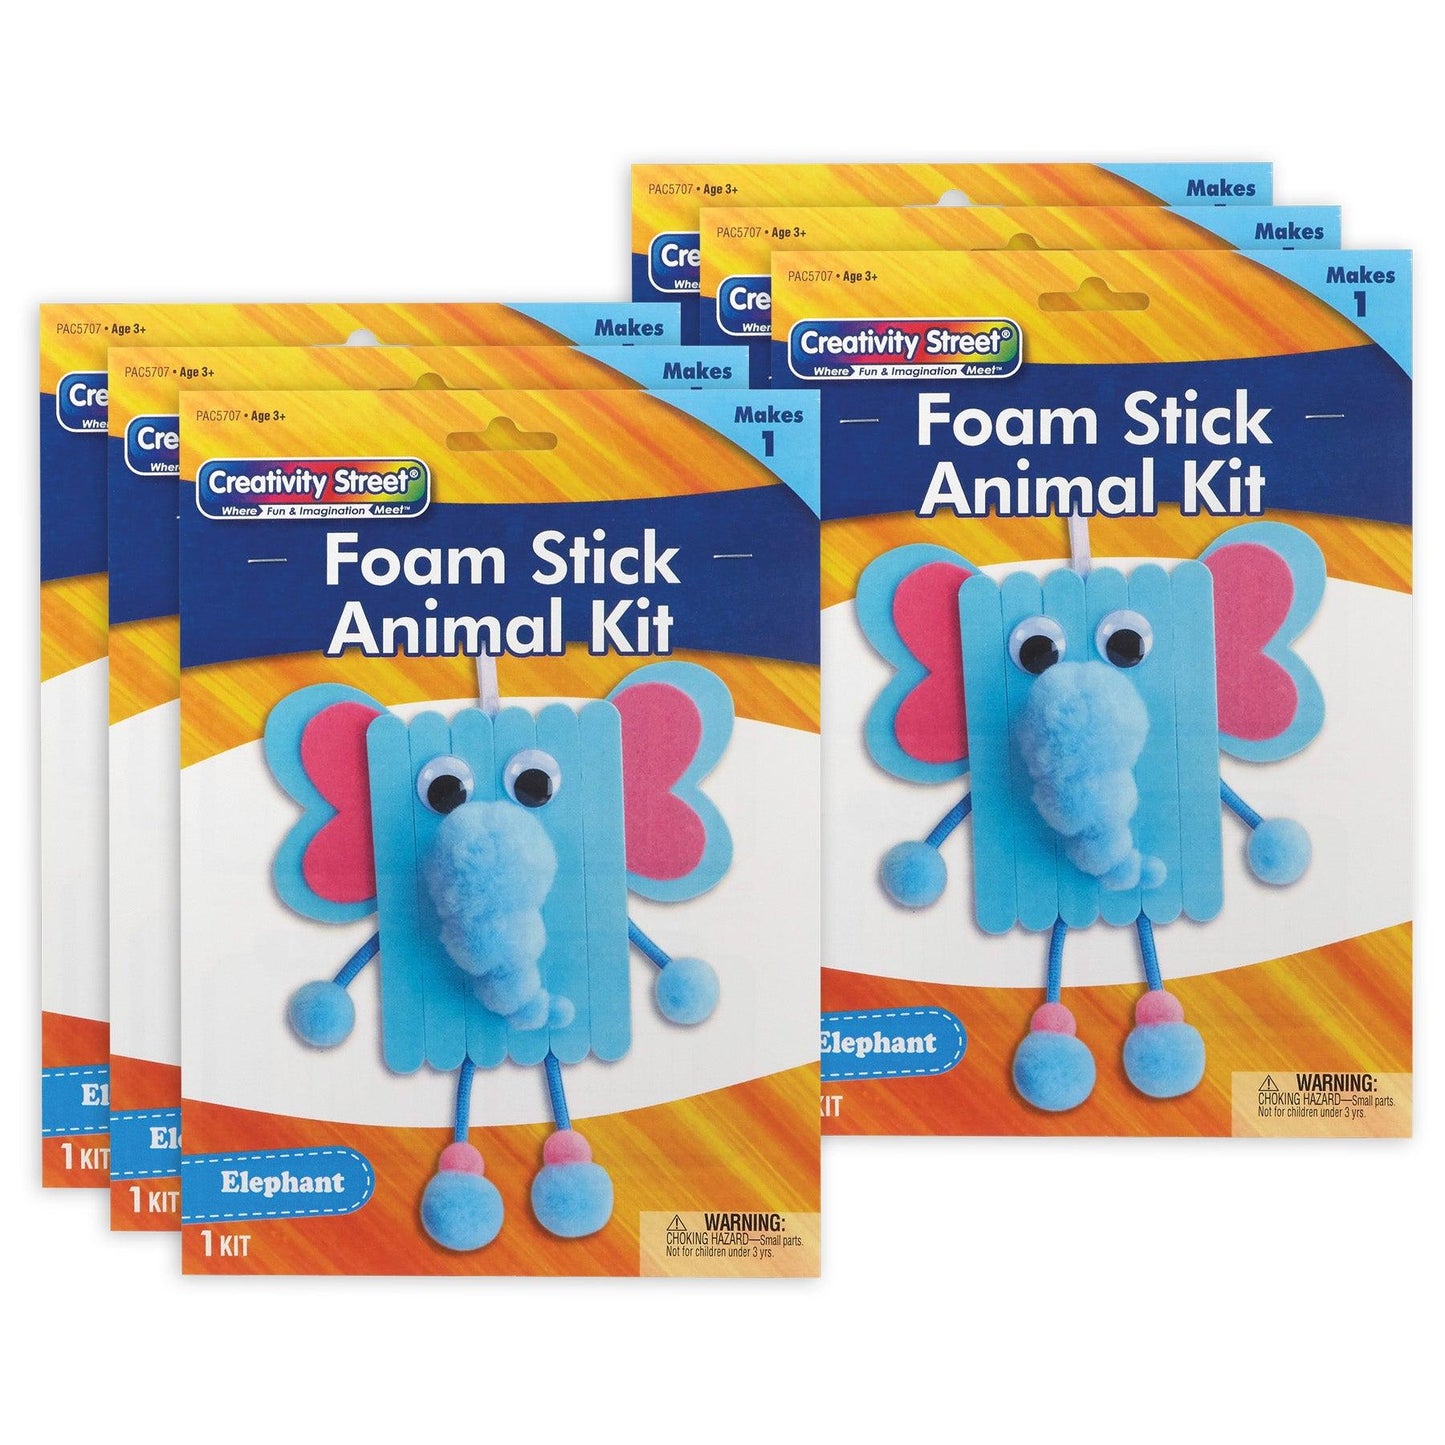 Foam Stick Animal Kit, Elephant, 7.75" x 11" x 1.25", 6 Kits - Loomini